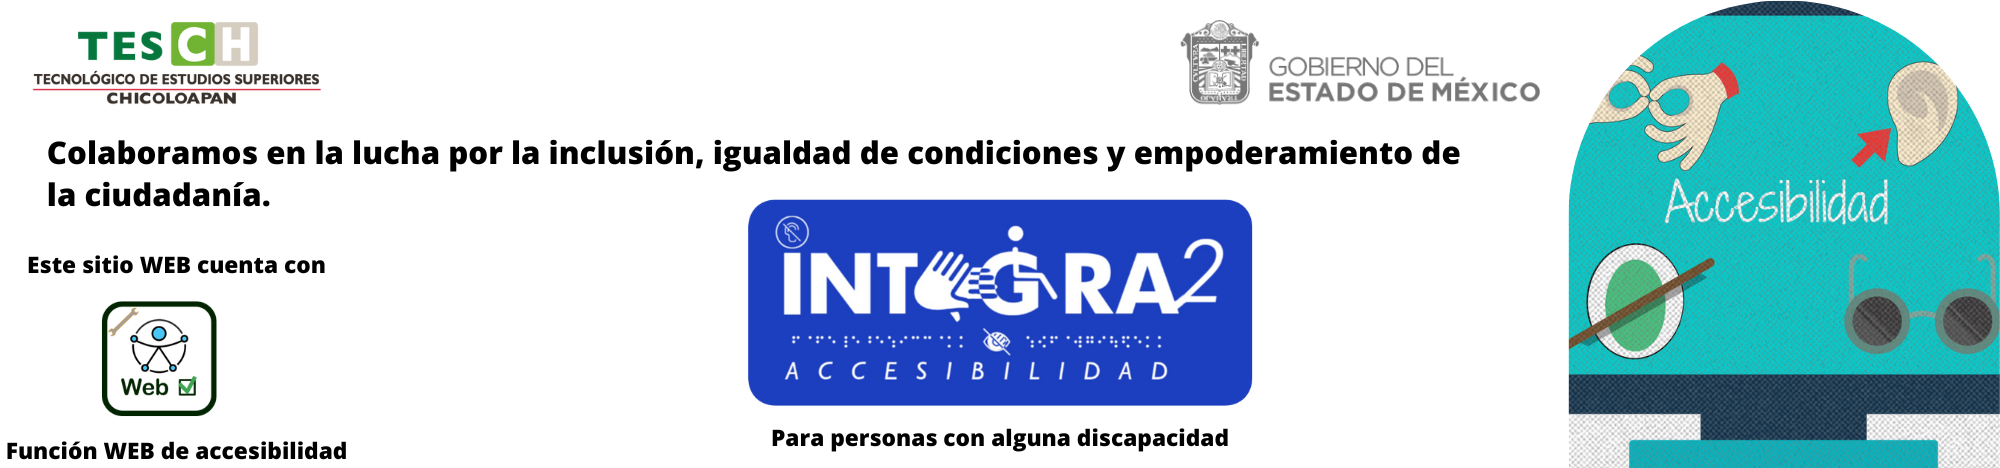 Accesibilidad con Integra2